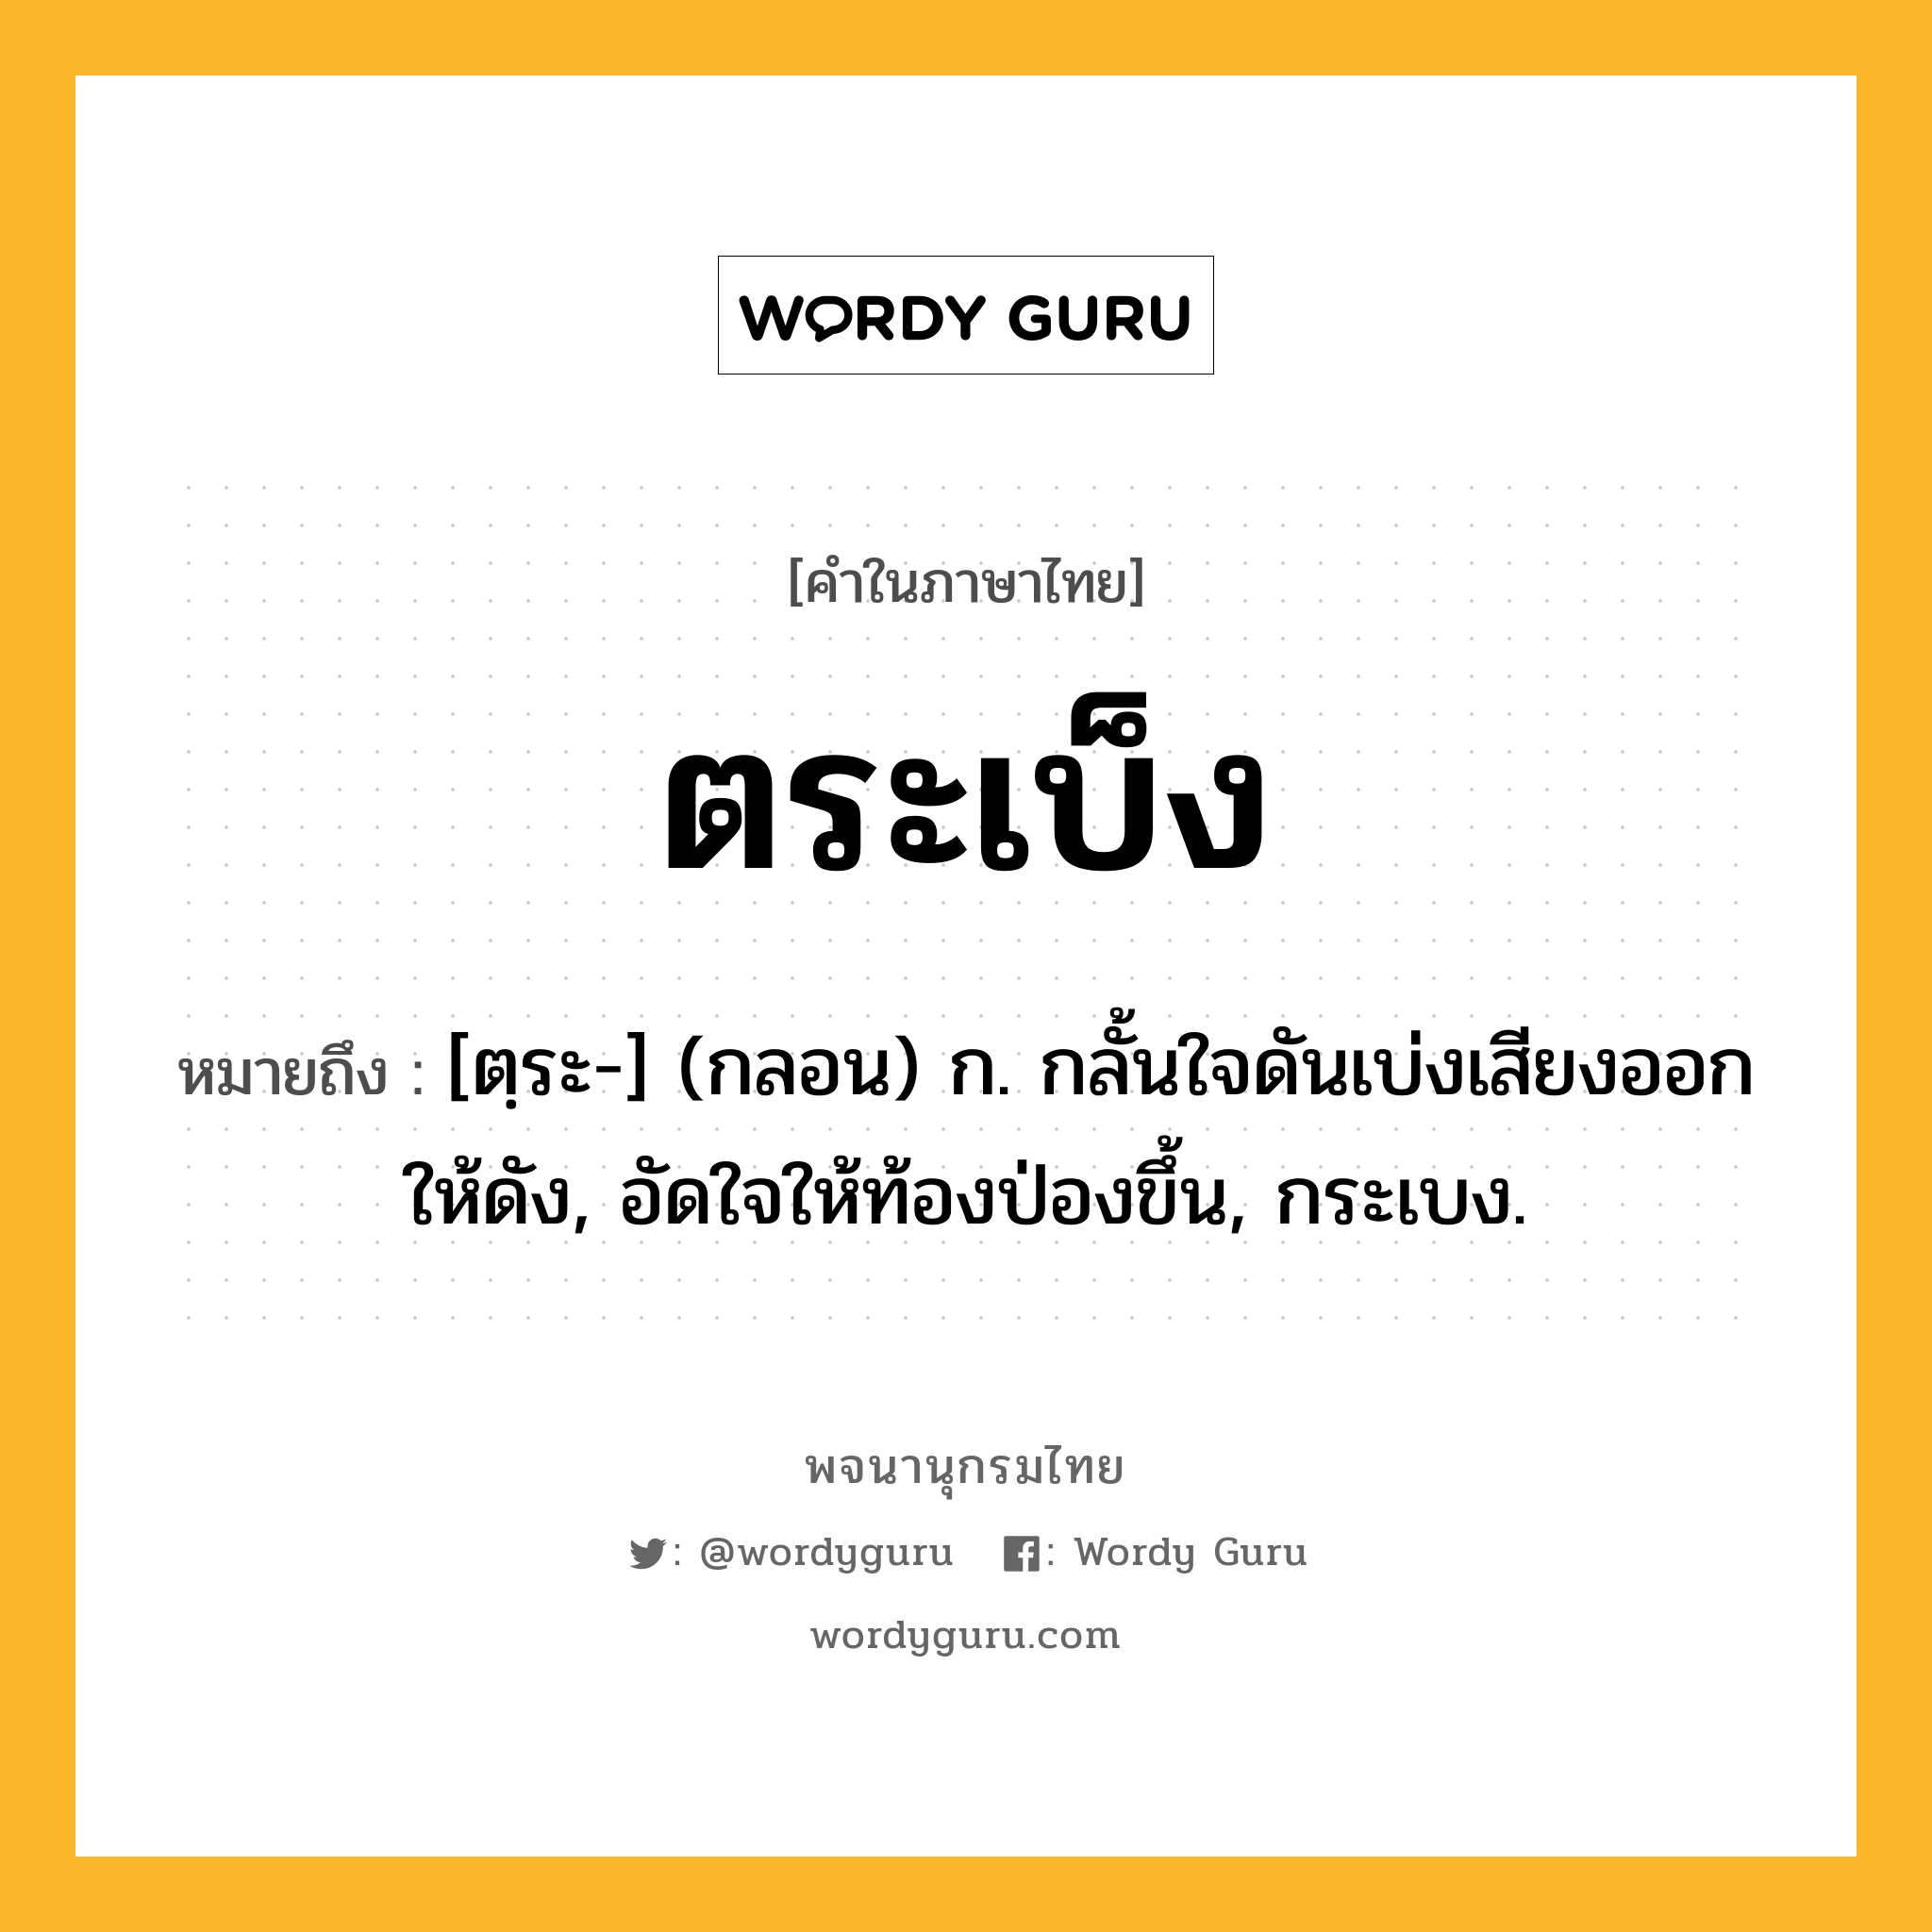 ตระเบ็ง หมายถึงอะไร?, คำในภาษาไทย ตระเบ็ง หมายถึง [ตฺระ-] (กลอน) ก. กลั้นใจดันเบ่งเสียงออกให้ดัง, อัดใจให้ท้องป่องขึ้น, กระเบง.